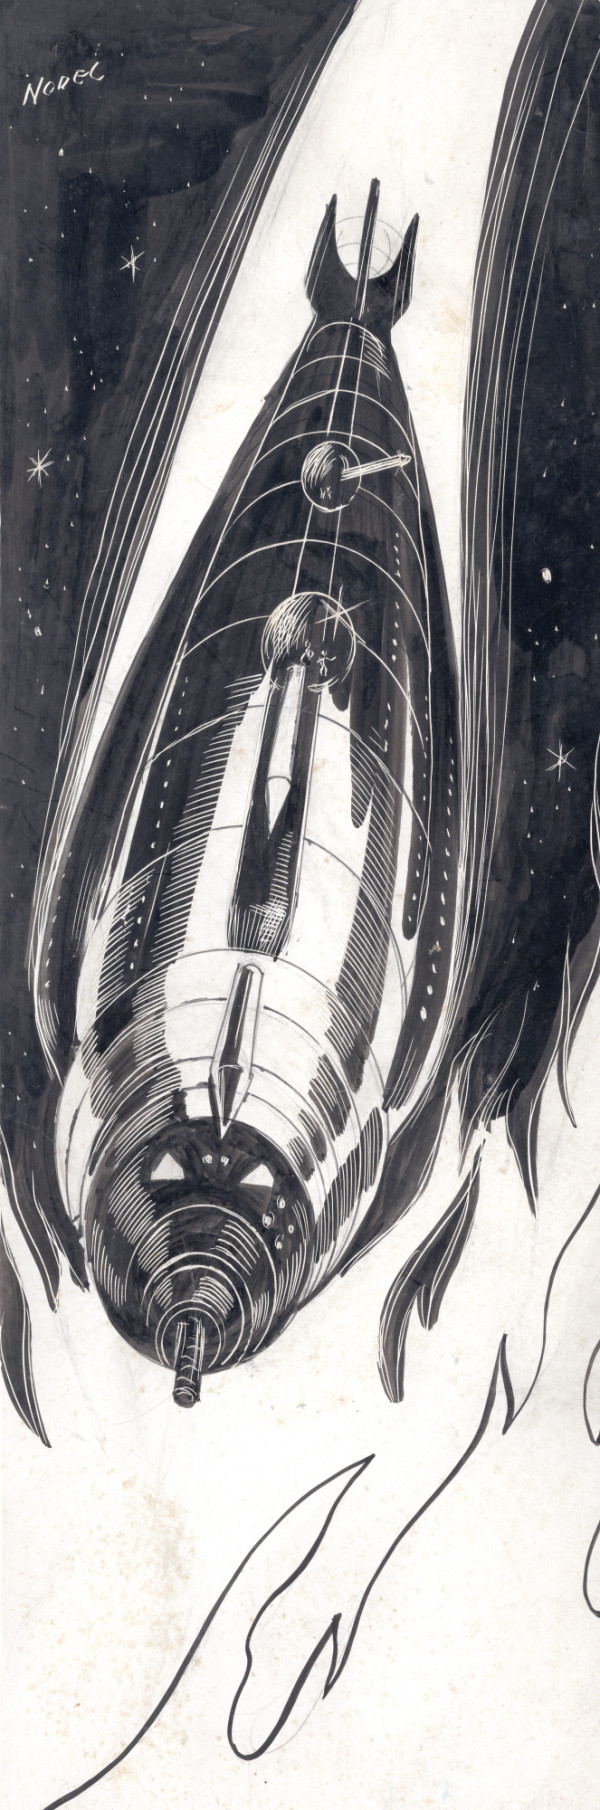 Rocket Ship - Pulp Illustration by Norman Nodel